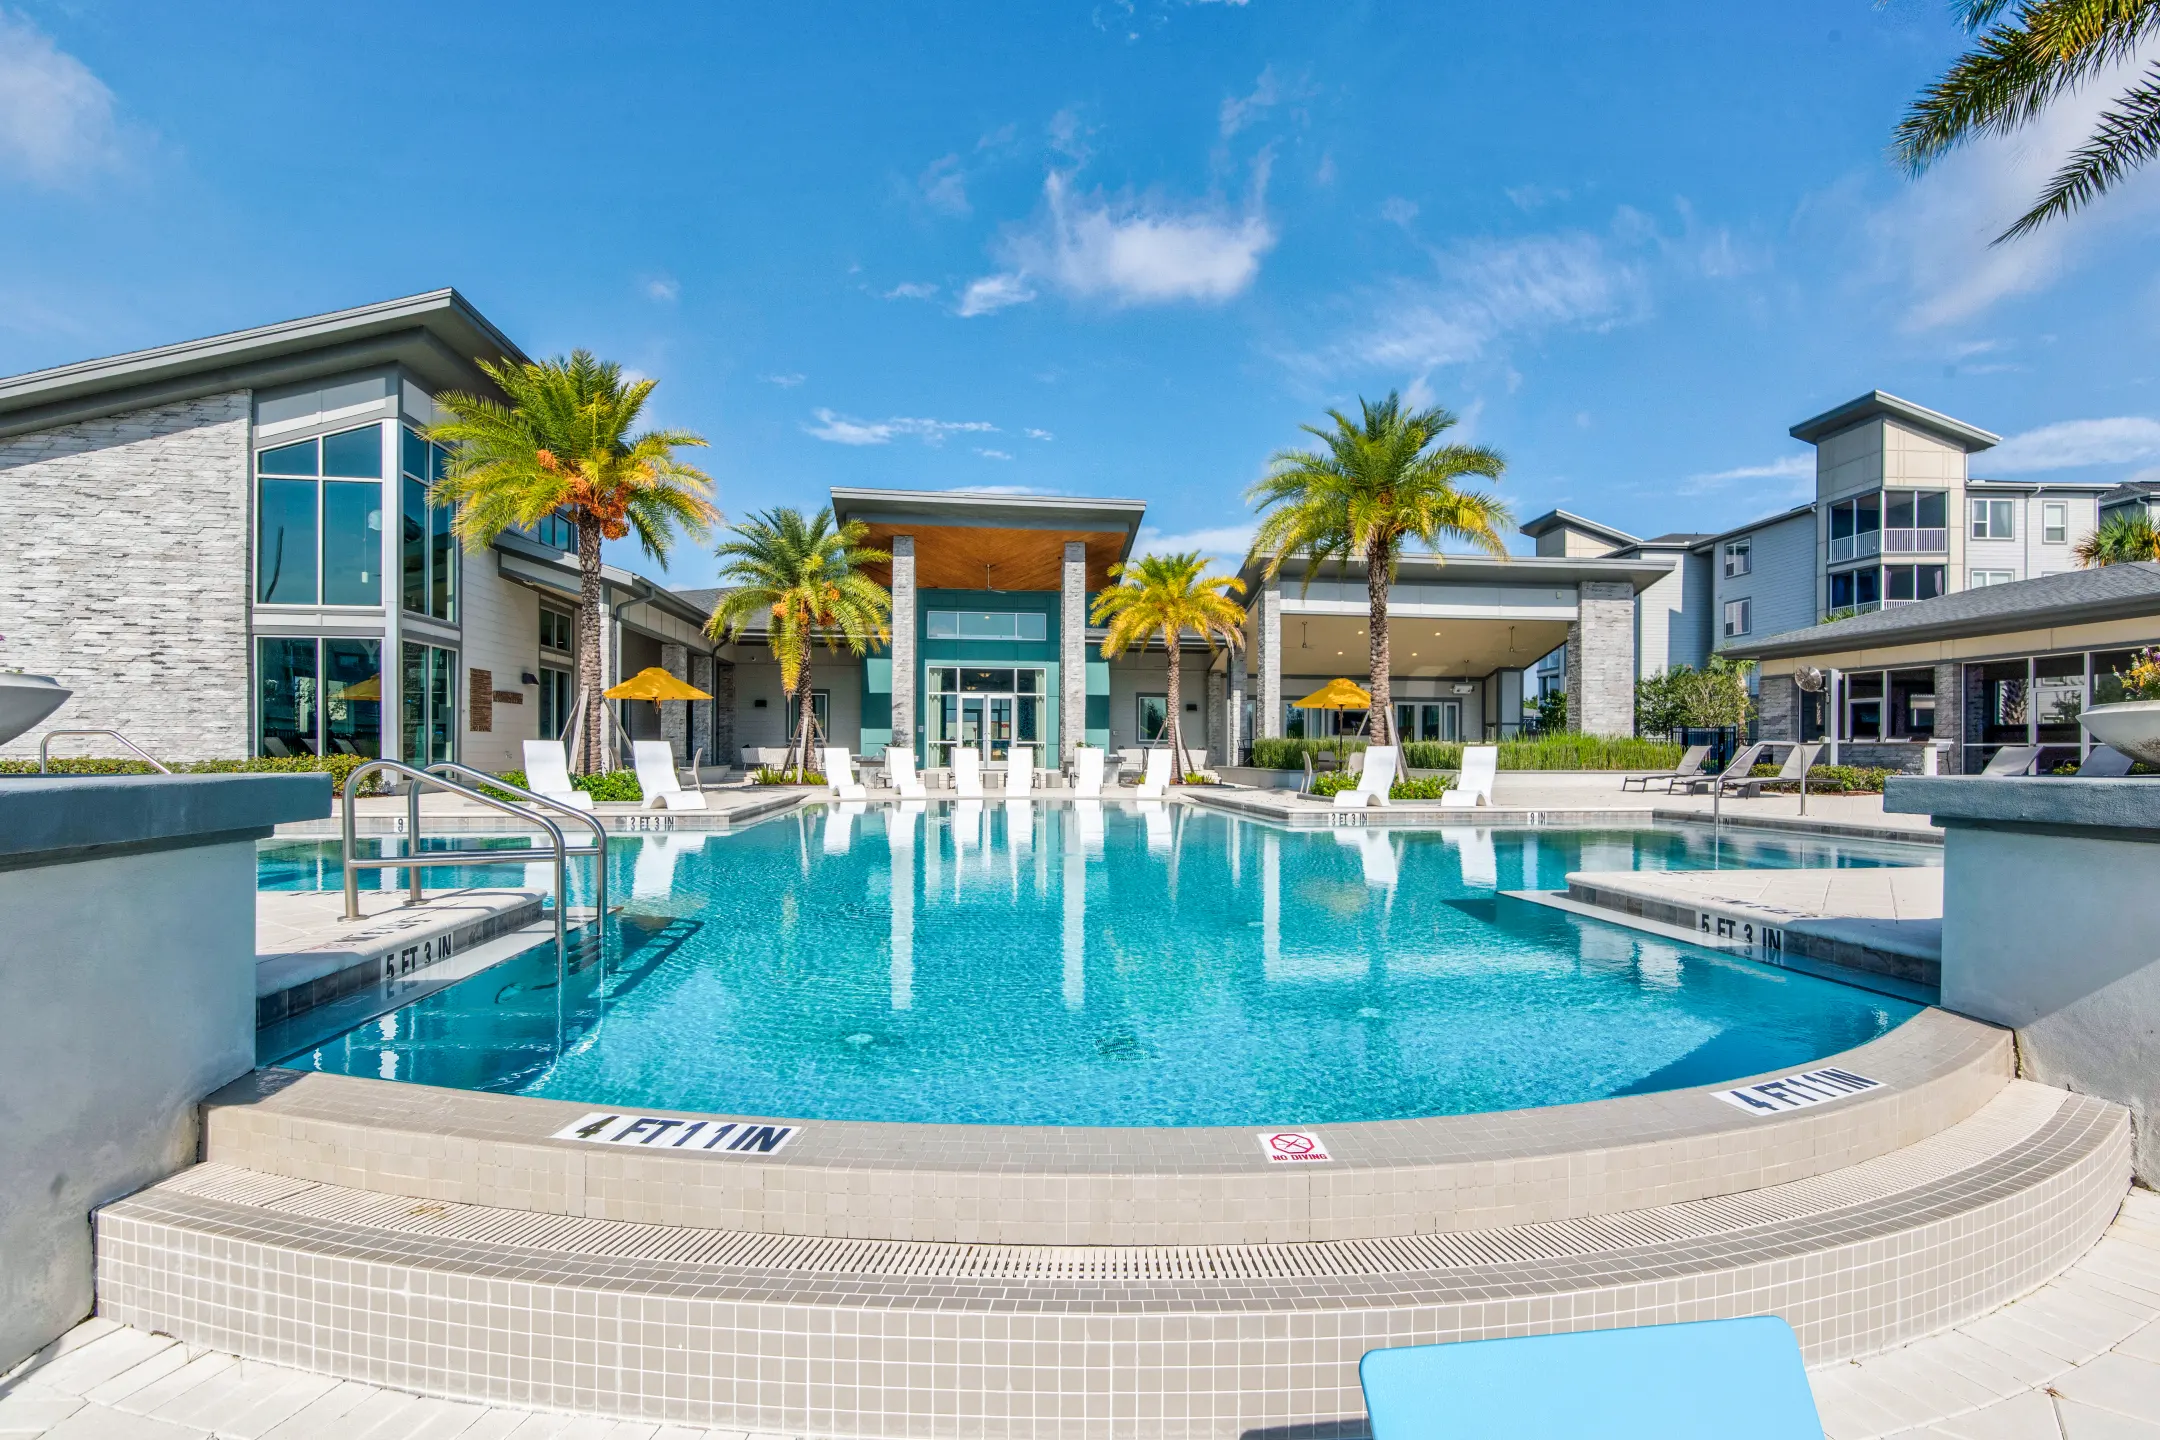 Pool - The Jamison - Kissimmee, FL